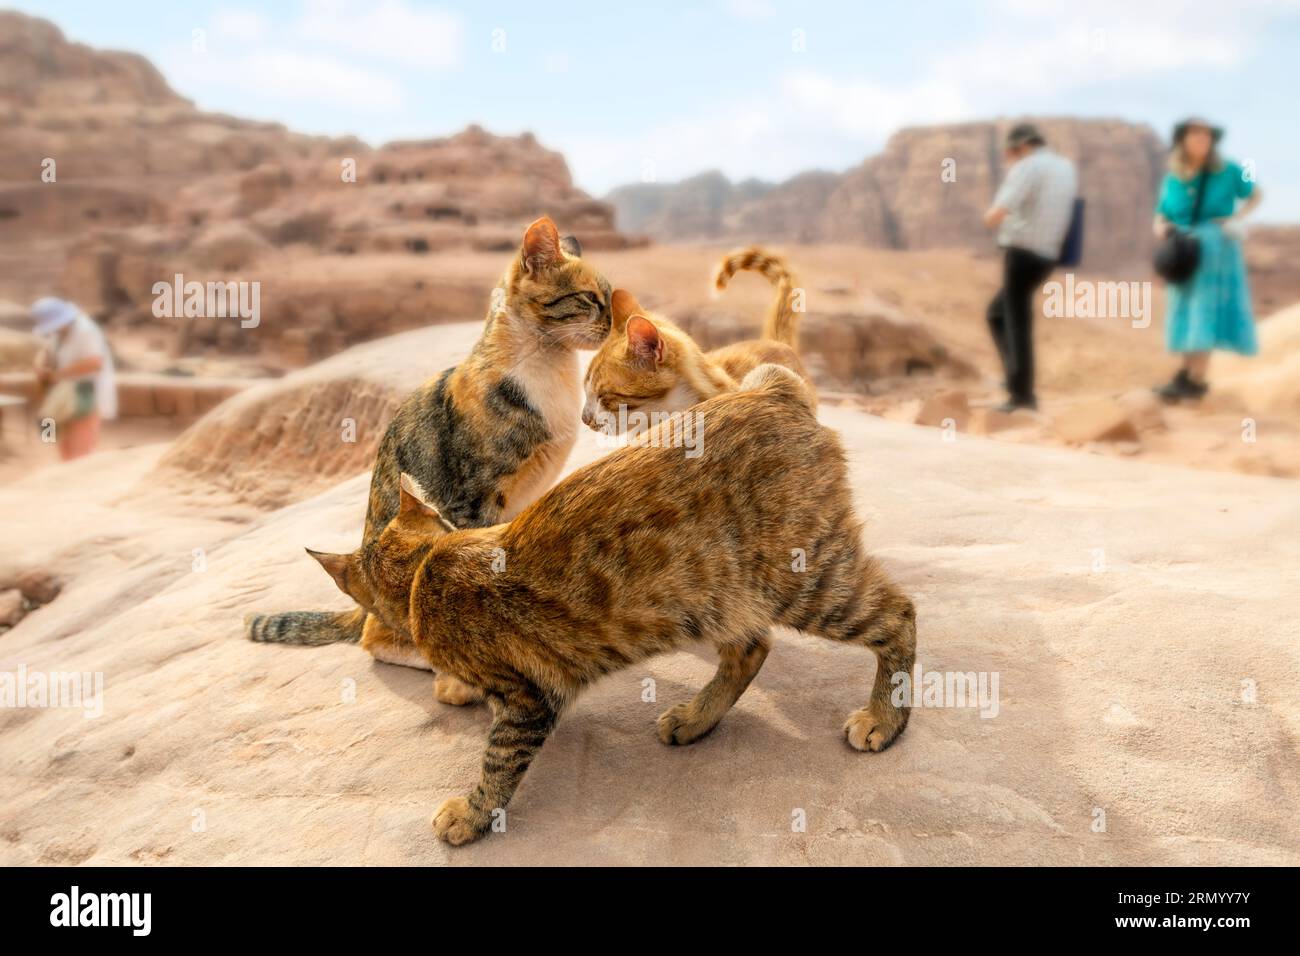 Trois chats errants interagissent ensemble sur un rocher avec les collines de grès rouge en vue derrière, dans l'ancienne ville de Petra, en Jordanie. Banque D'Images